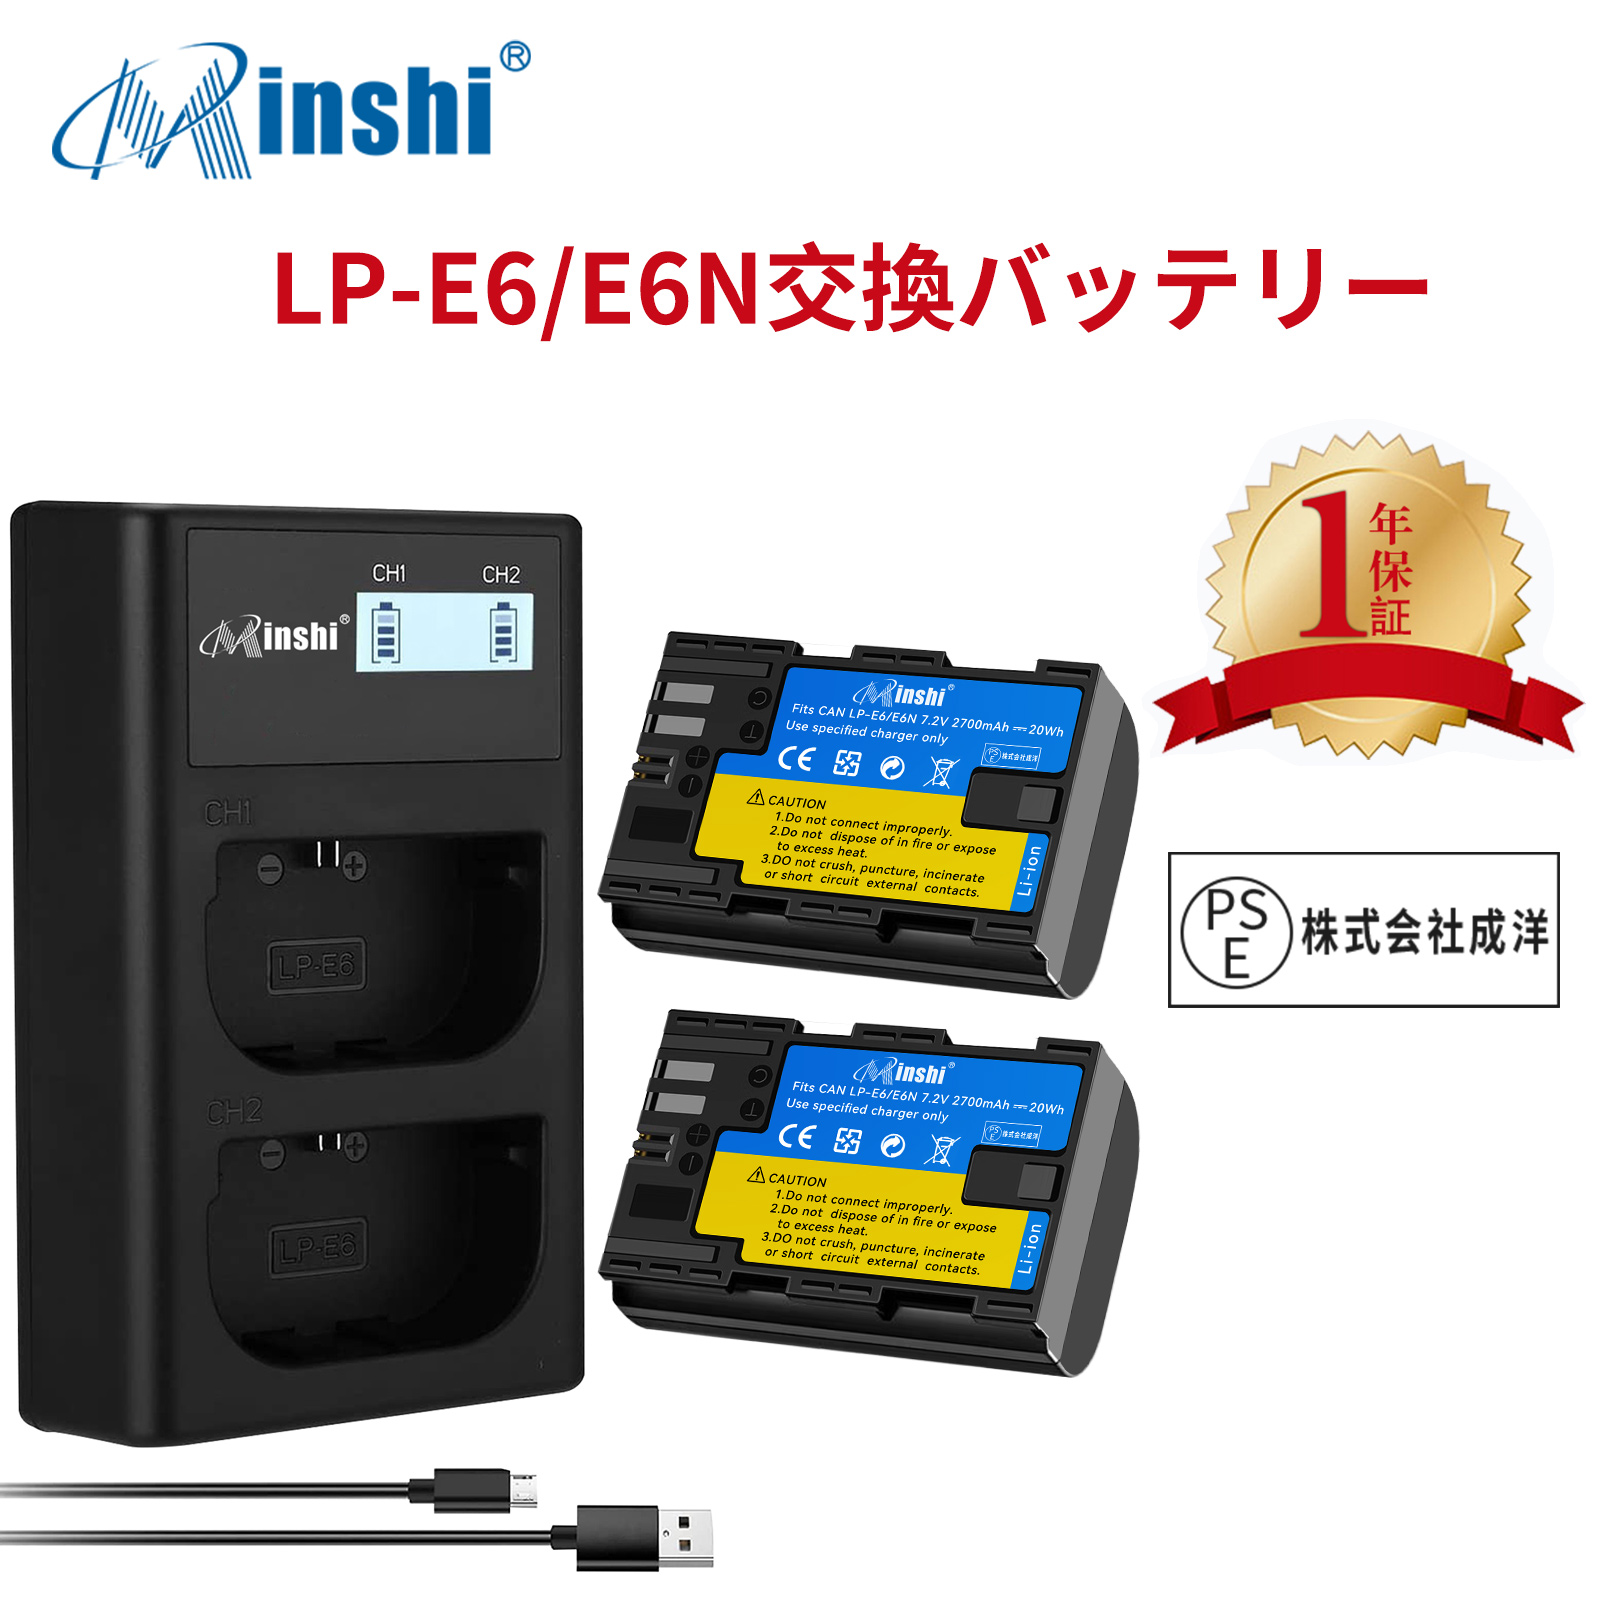 【２個セット】minshi Canon EOS 80D LP-E6 LP-E6NH LP-E6N EOS6D CANON 80D 【2700mAh 7.2V 】【互換急速USBチャージャー】 高品質交換用バッテリー